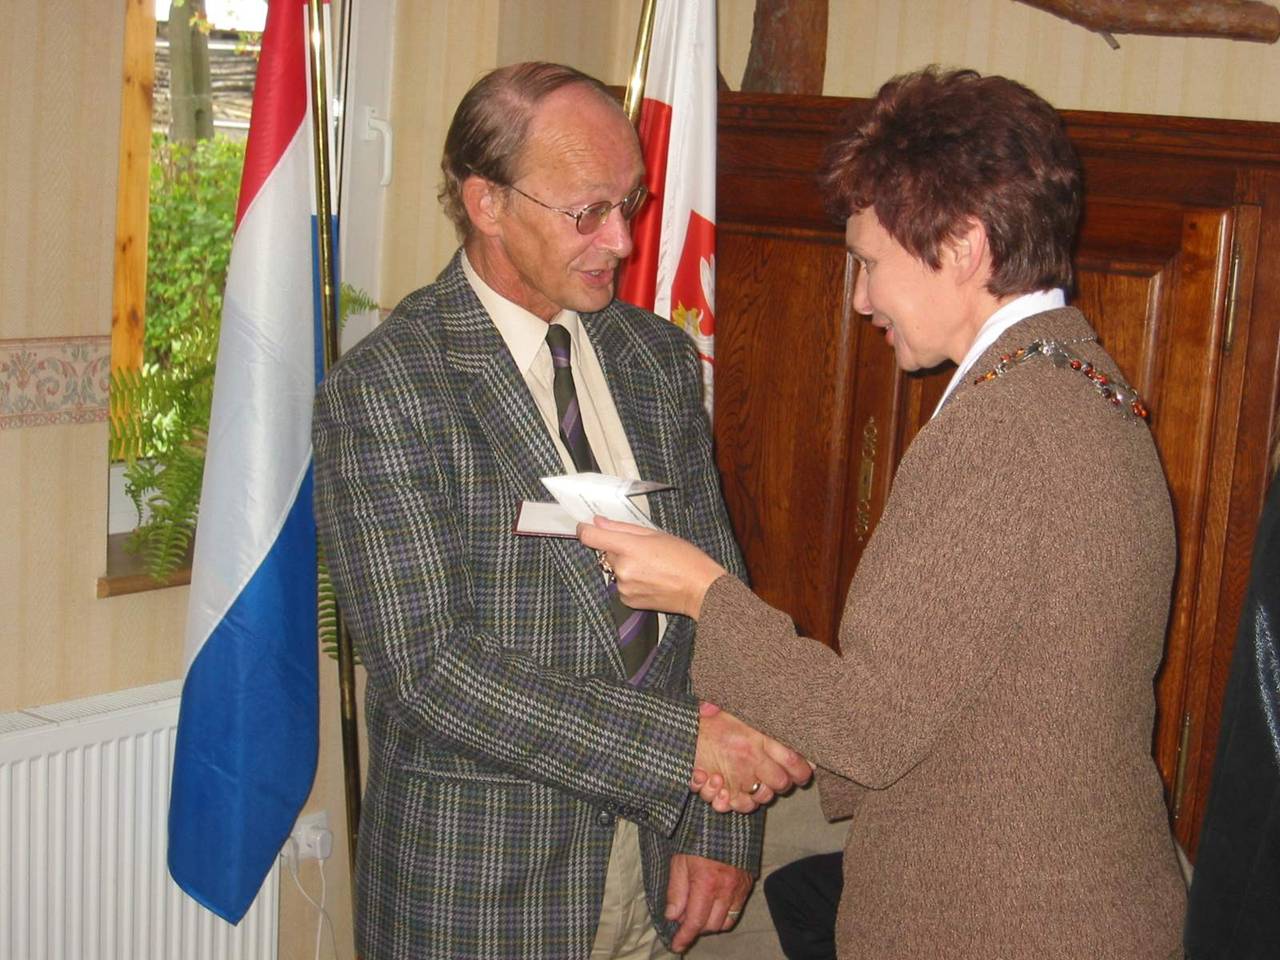 Jan Brandsma odbiera medal od ówczesnej przewodniczącej RM Dębna Heleny Sługockiej 